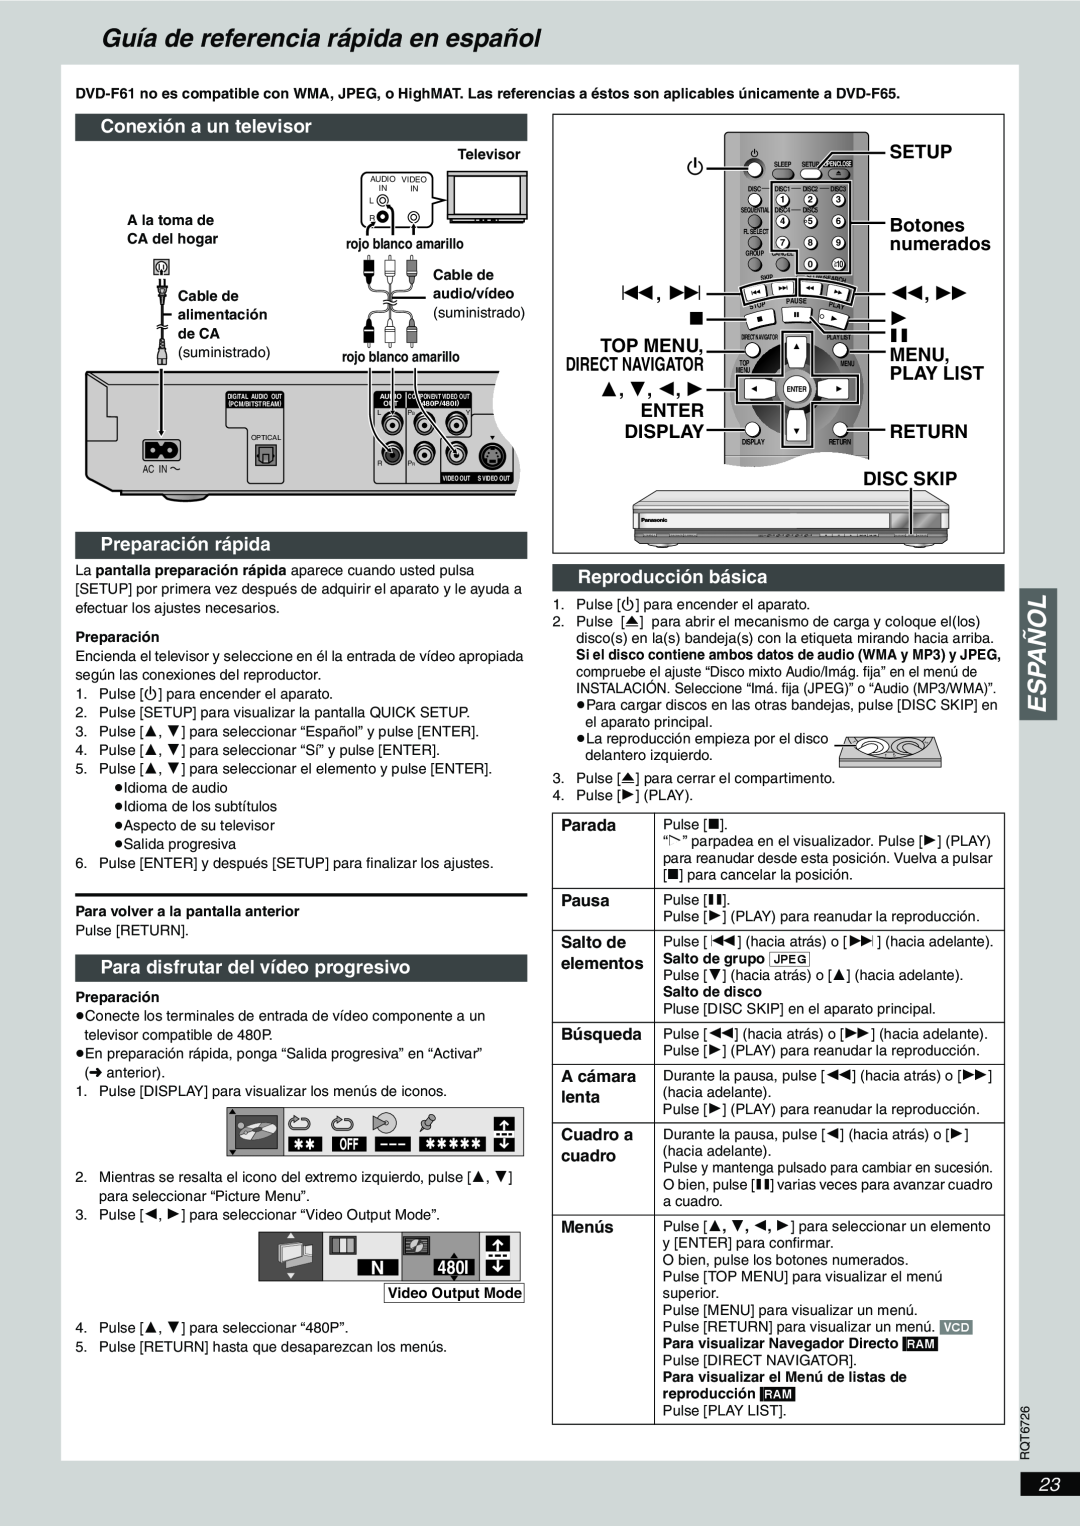 Panasonic DVD-F61 Guía de referencia rápida en español, Español, numerados, Parada, Pausa, Salto de, Búsqueda, A cámara 